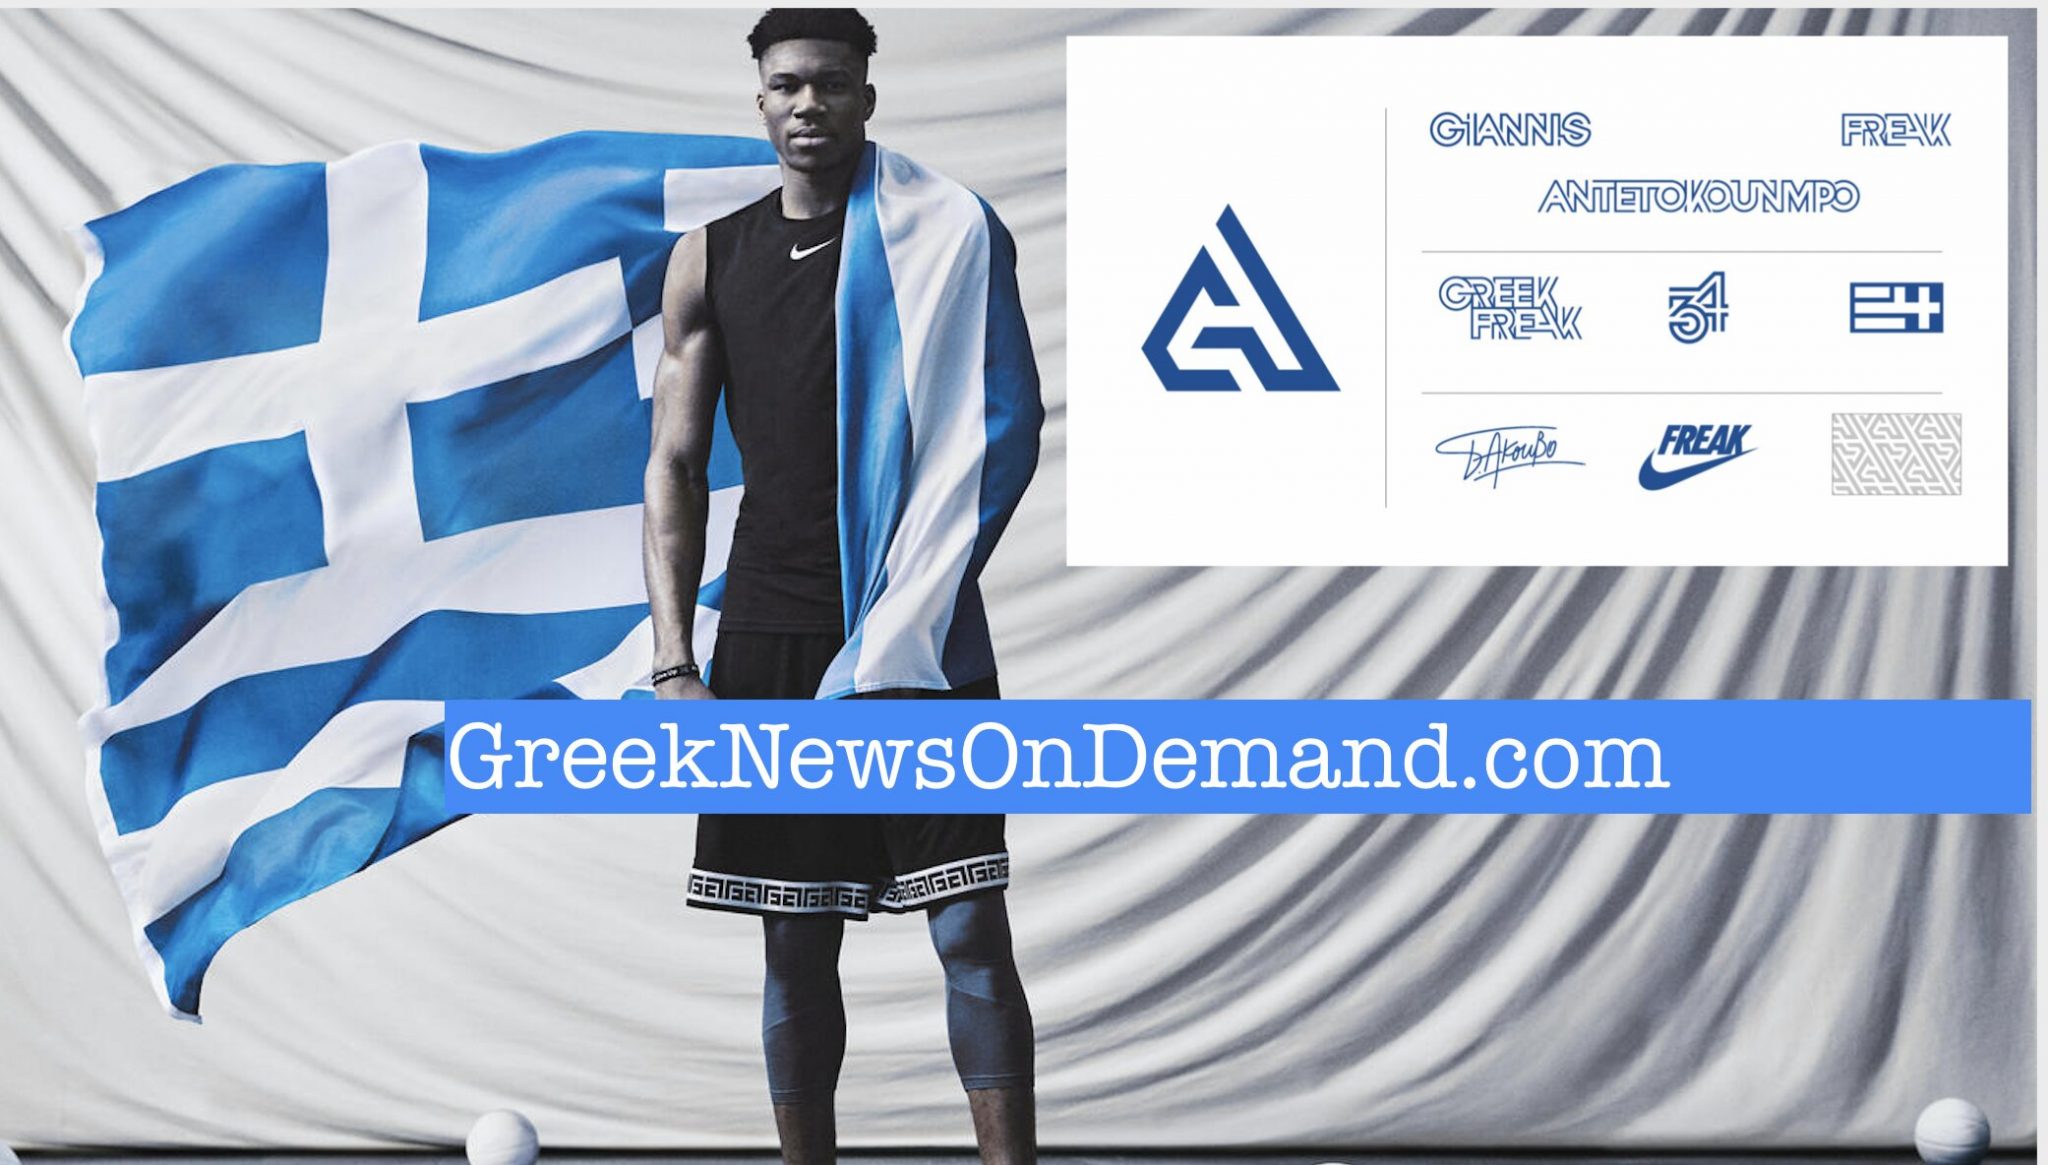 Ποιός να πίστευε ότι η ελληνική σημαία θα γινόταν κεντρικὀ λογότυπο της ΝΙΚΕ χάρι στον Αντετοκούμπο